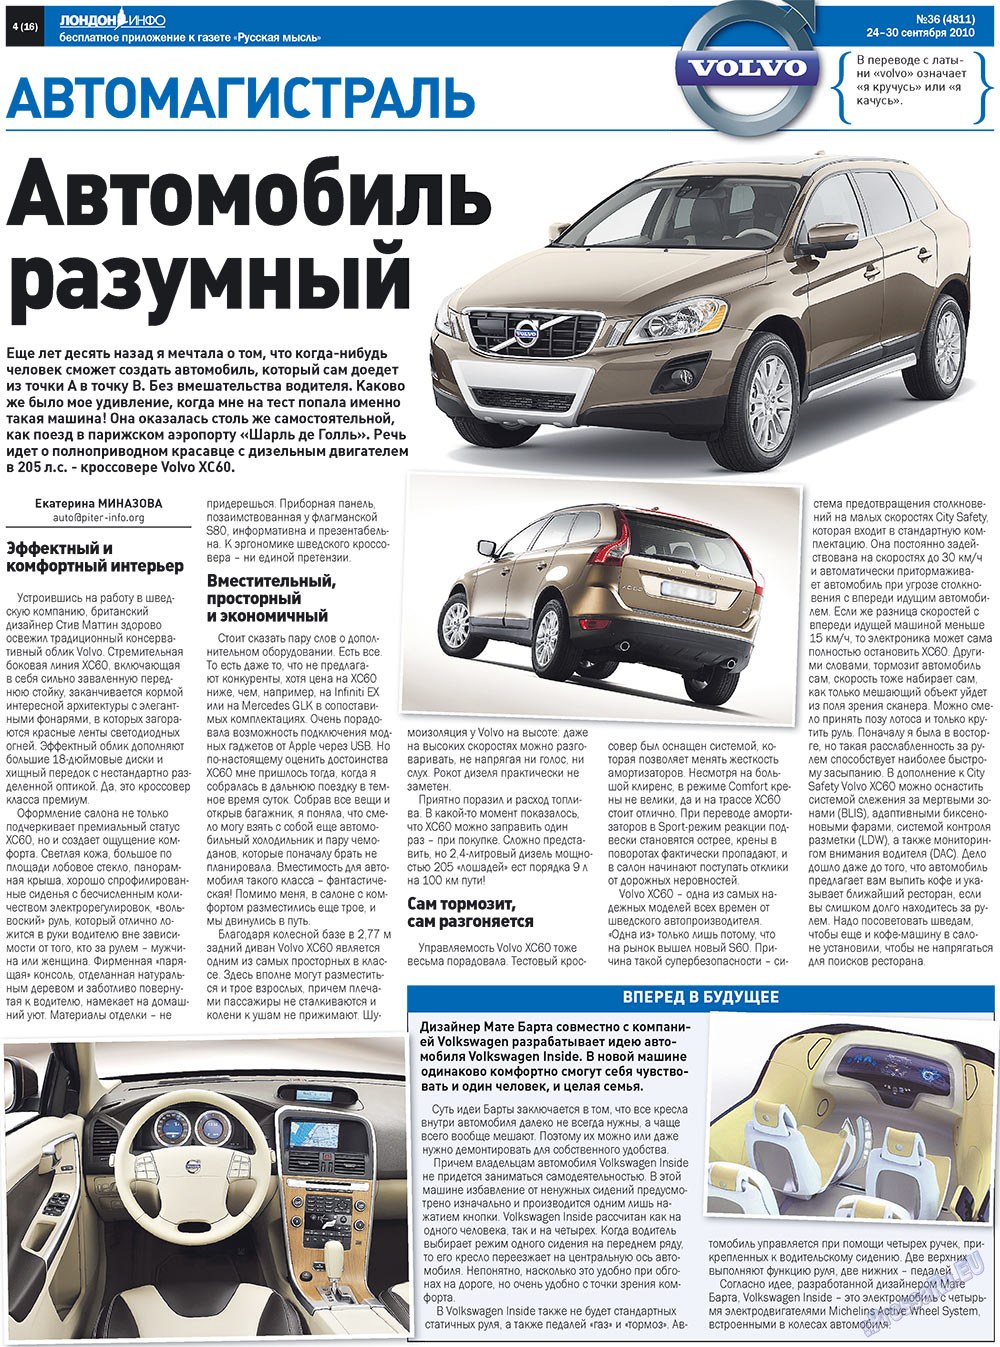 Русская Мысль (газета). 2010 год, номер 36, стр. 24